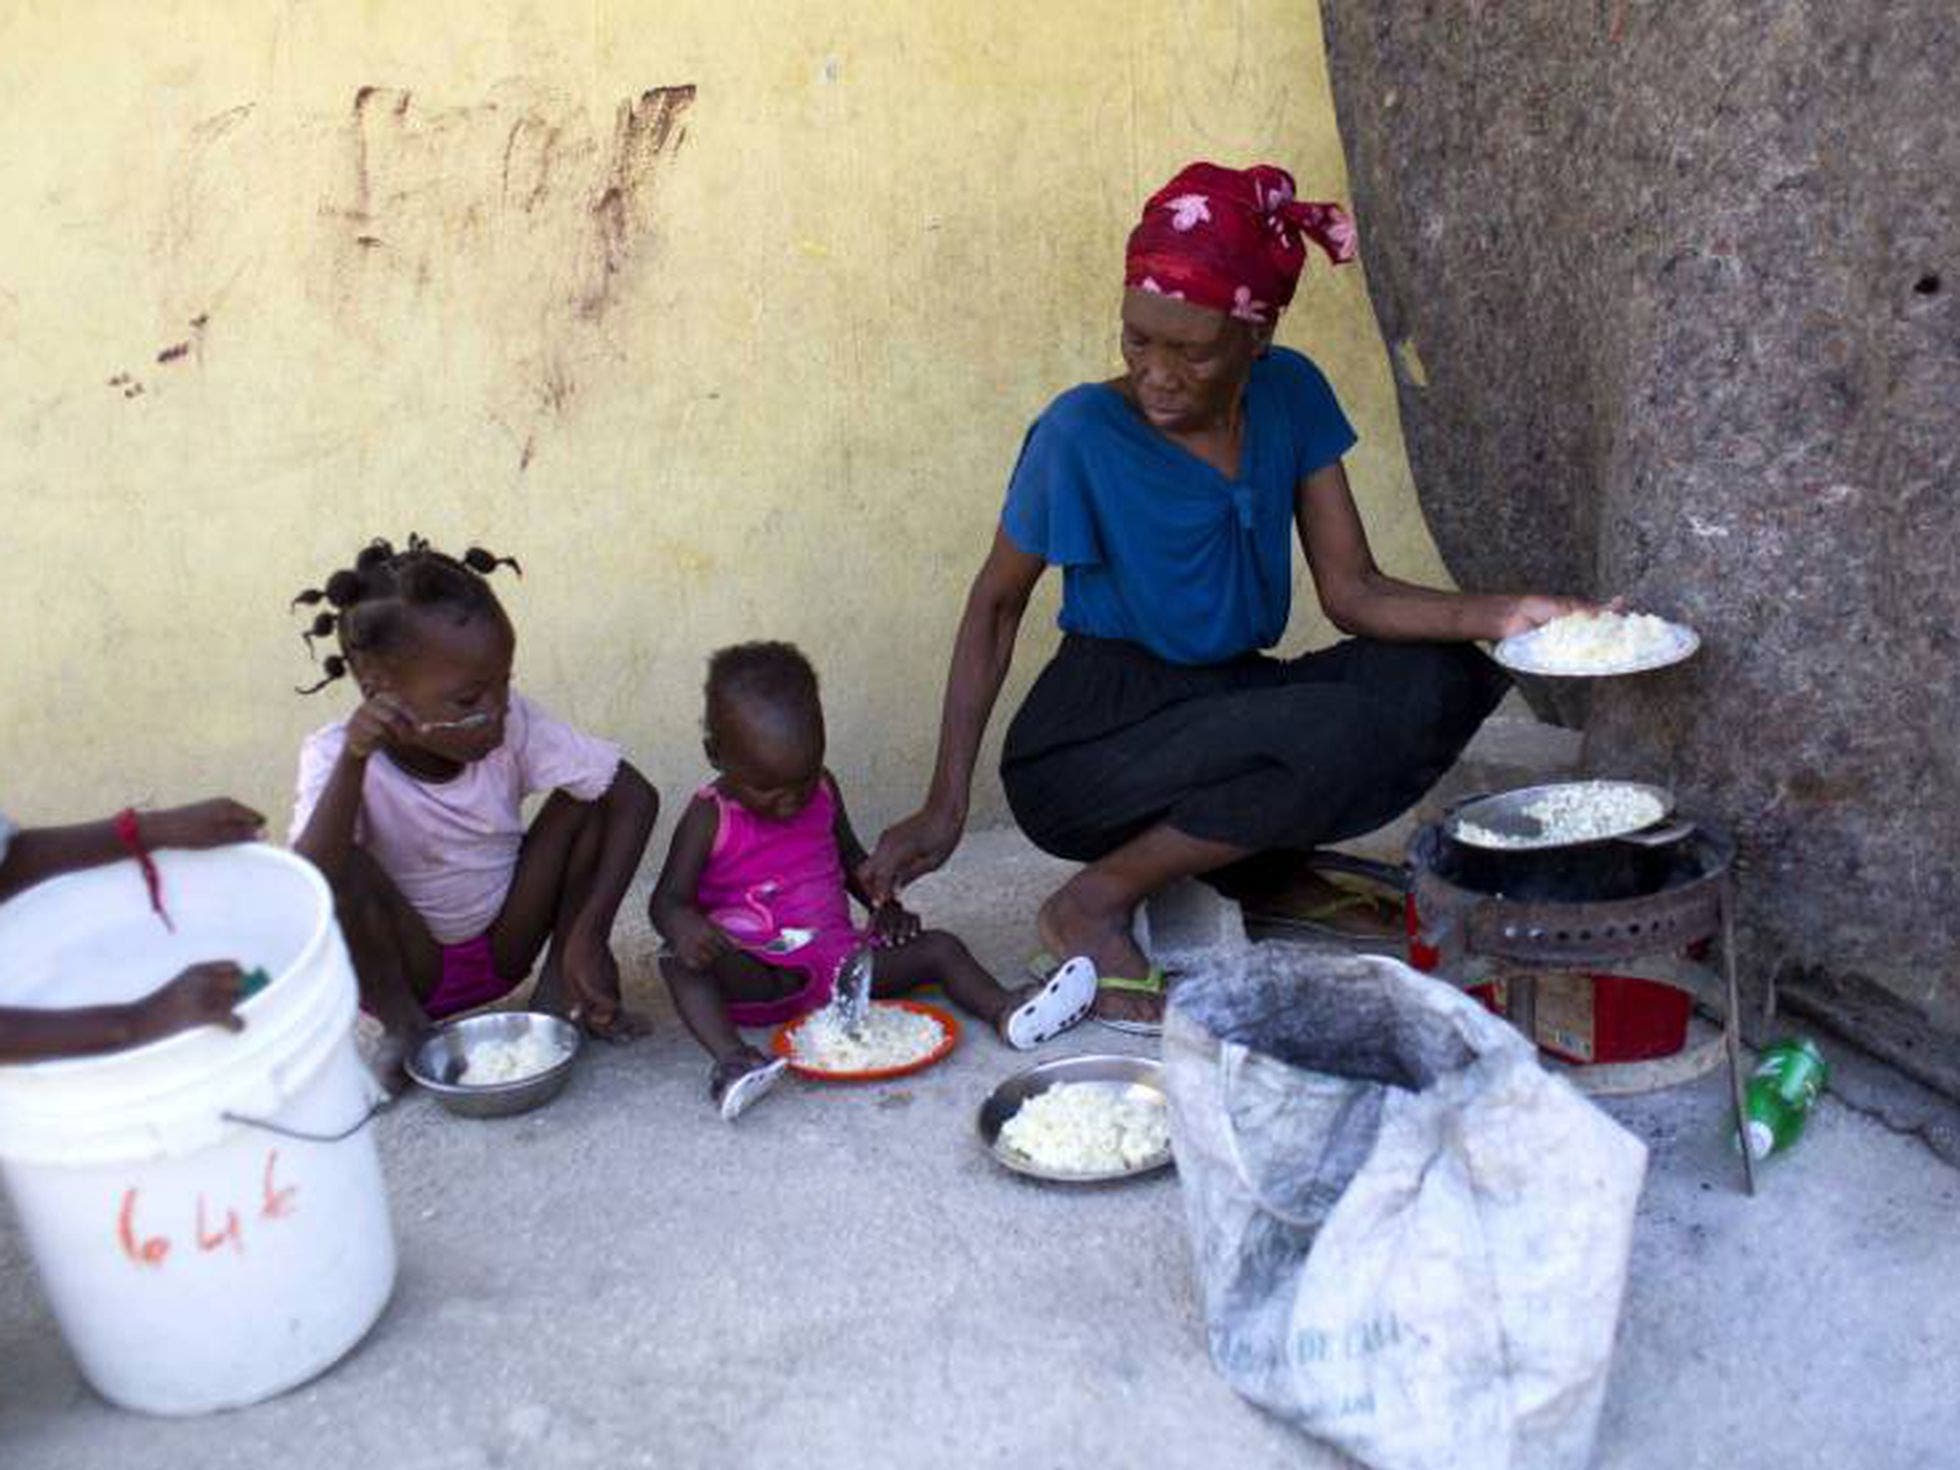 El hambre en Haití anula los esfuerzos para estabilizar el país, afirma la ONU